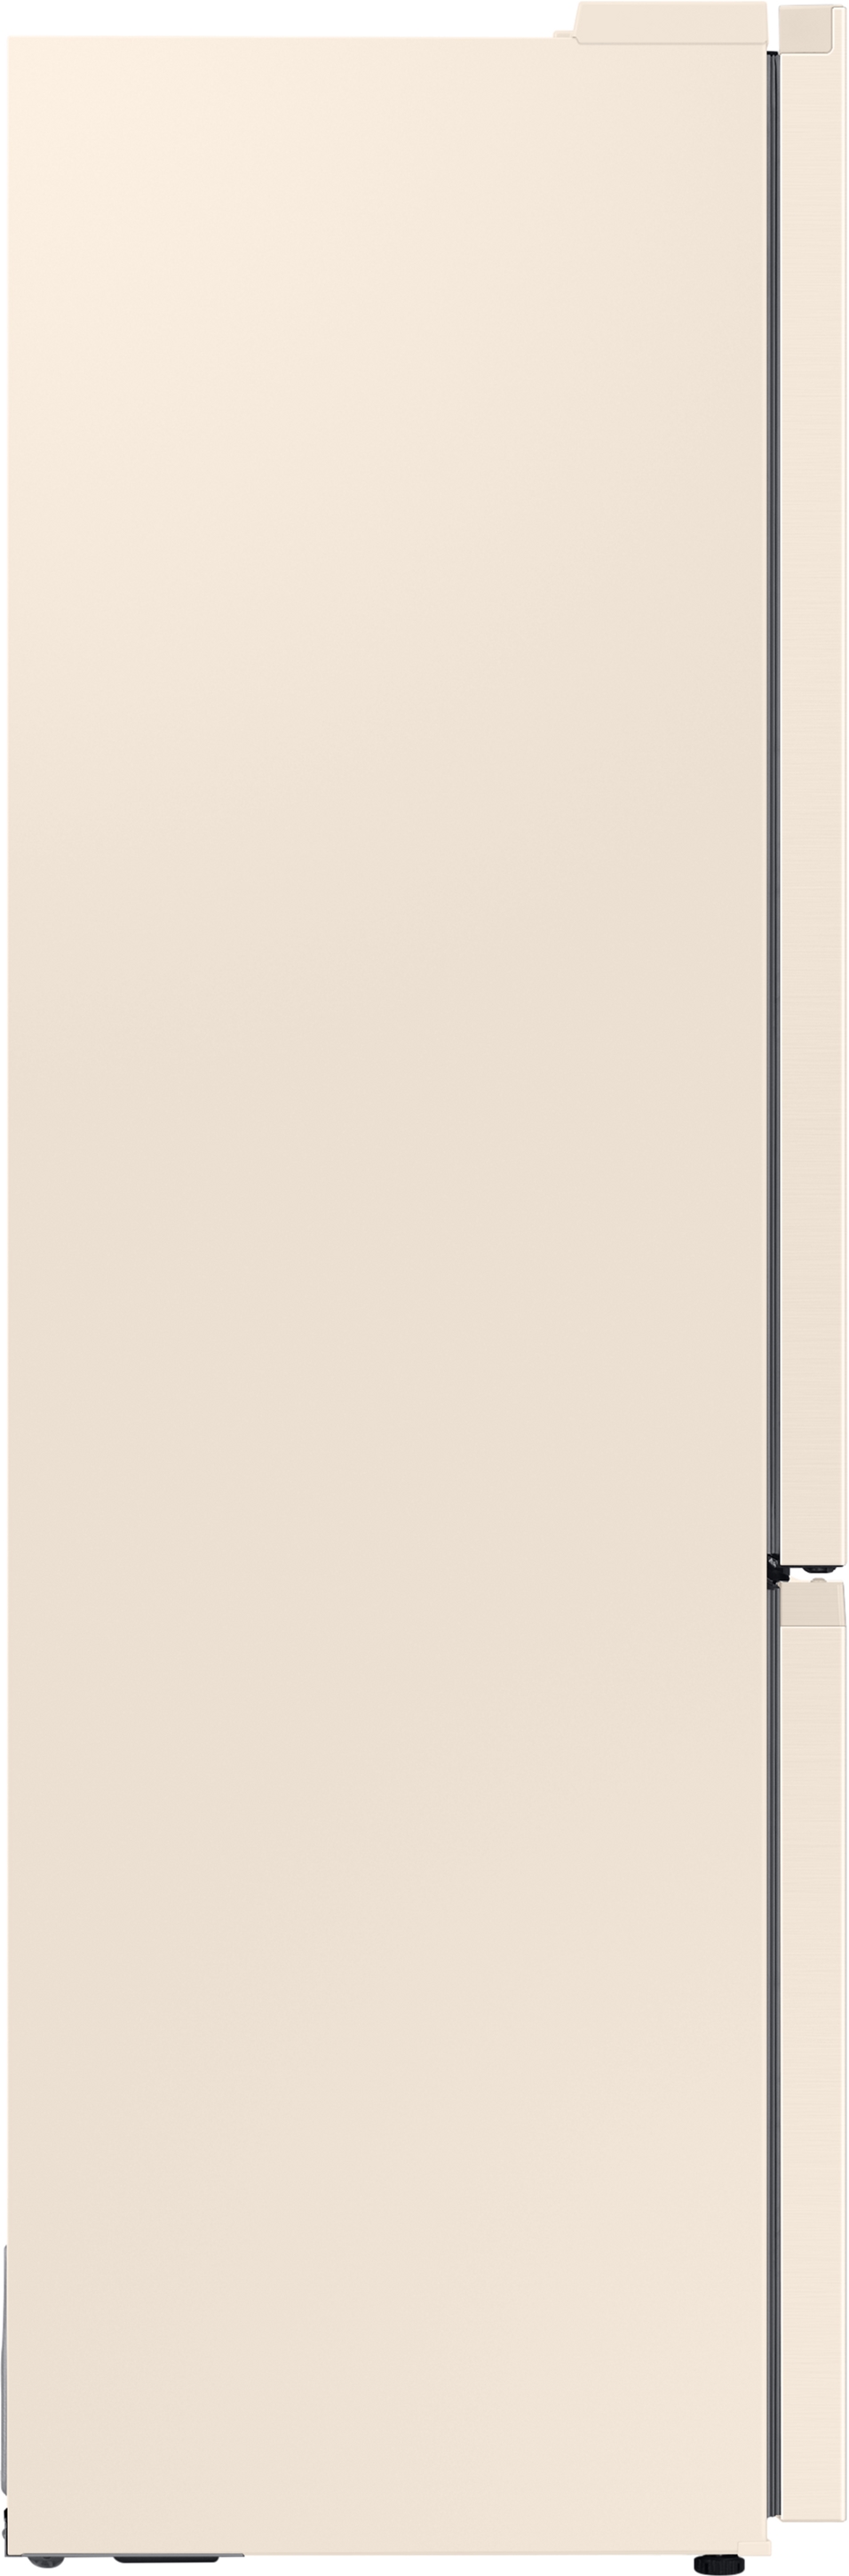 Холодильник Samsung RB38T603FEL/UA инструкция - изображение 6